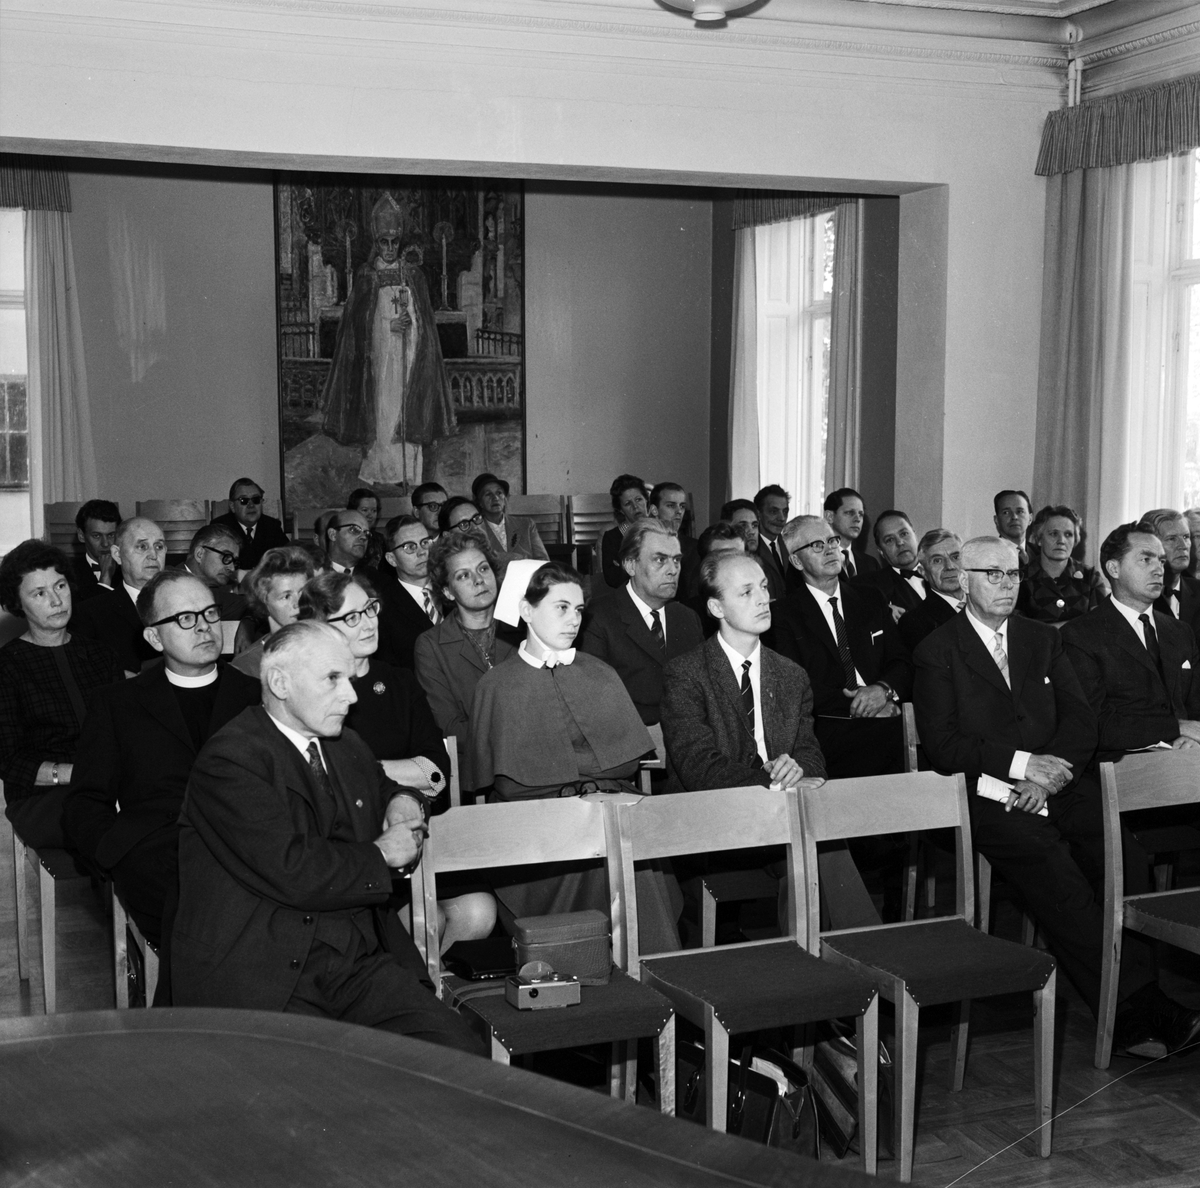 Kyrkliga folkbildare samlade, Uppsala 1962